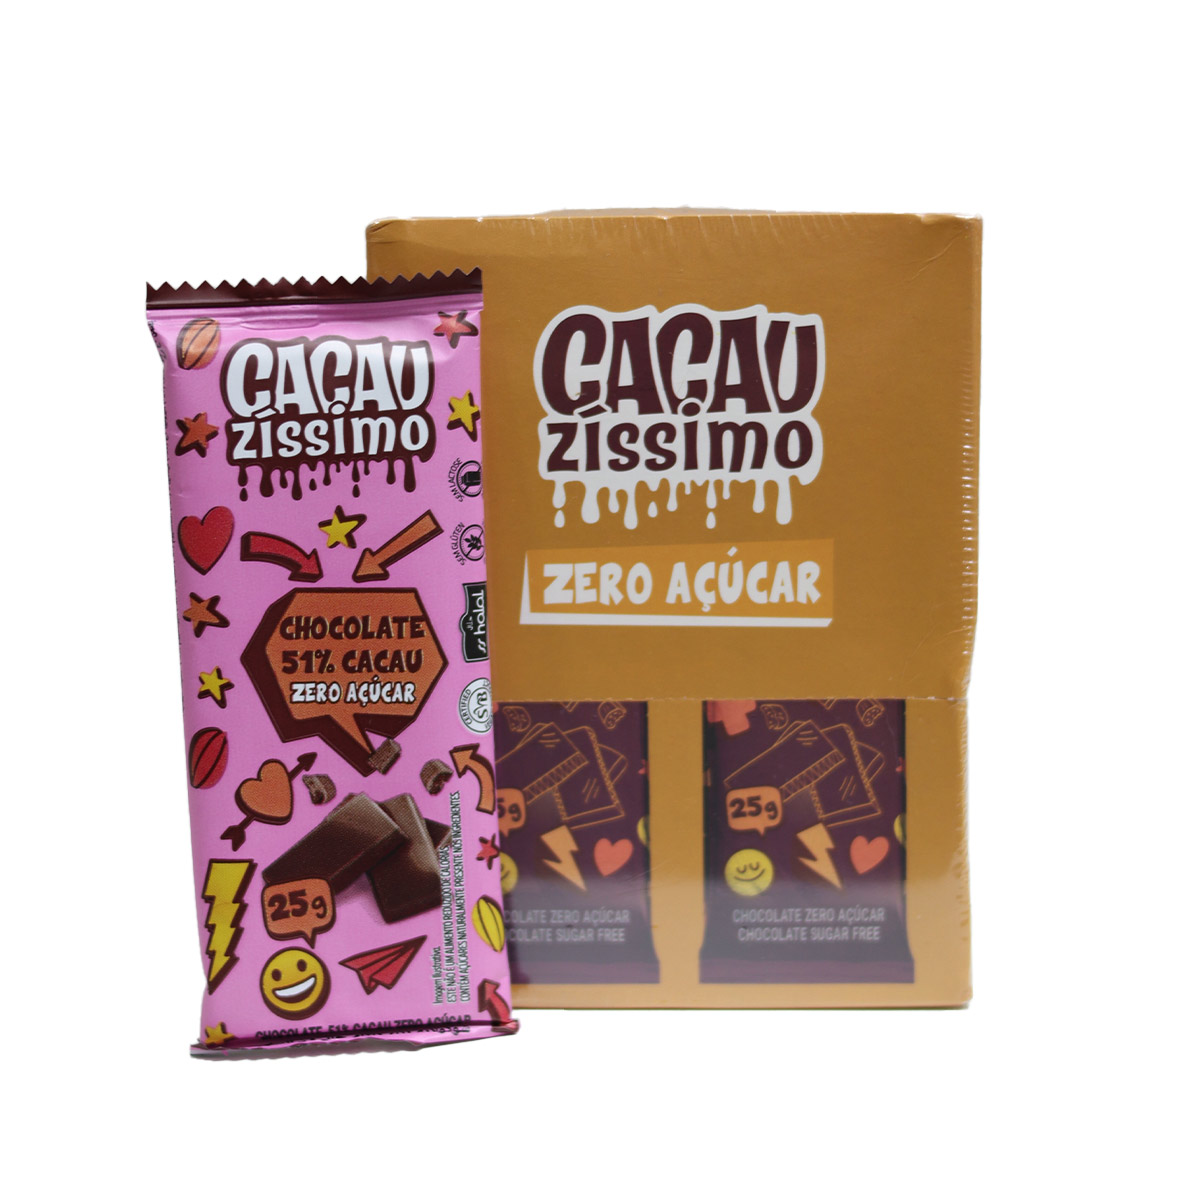 Display Chocolate 51% cacau 20 Unidade - Cacauzíssimo zero açúcar - Trecos  Para Casa - Ribeirão Preto